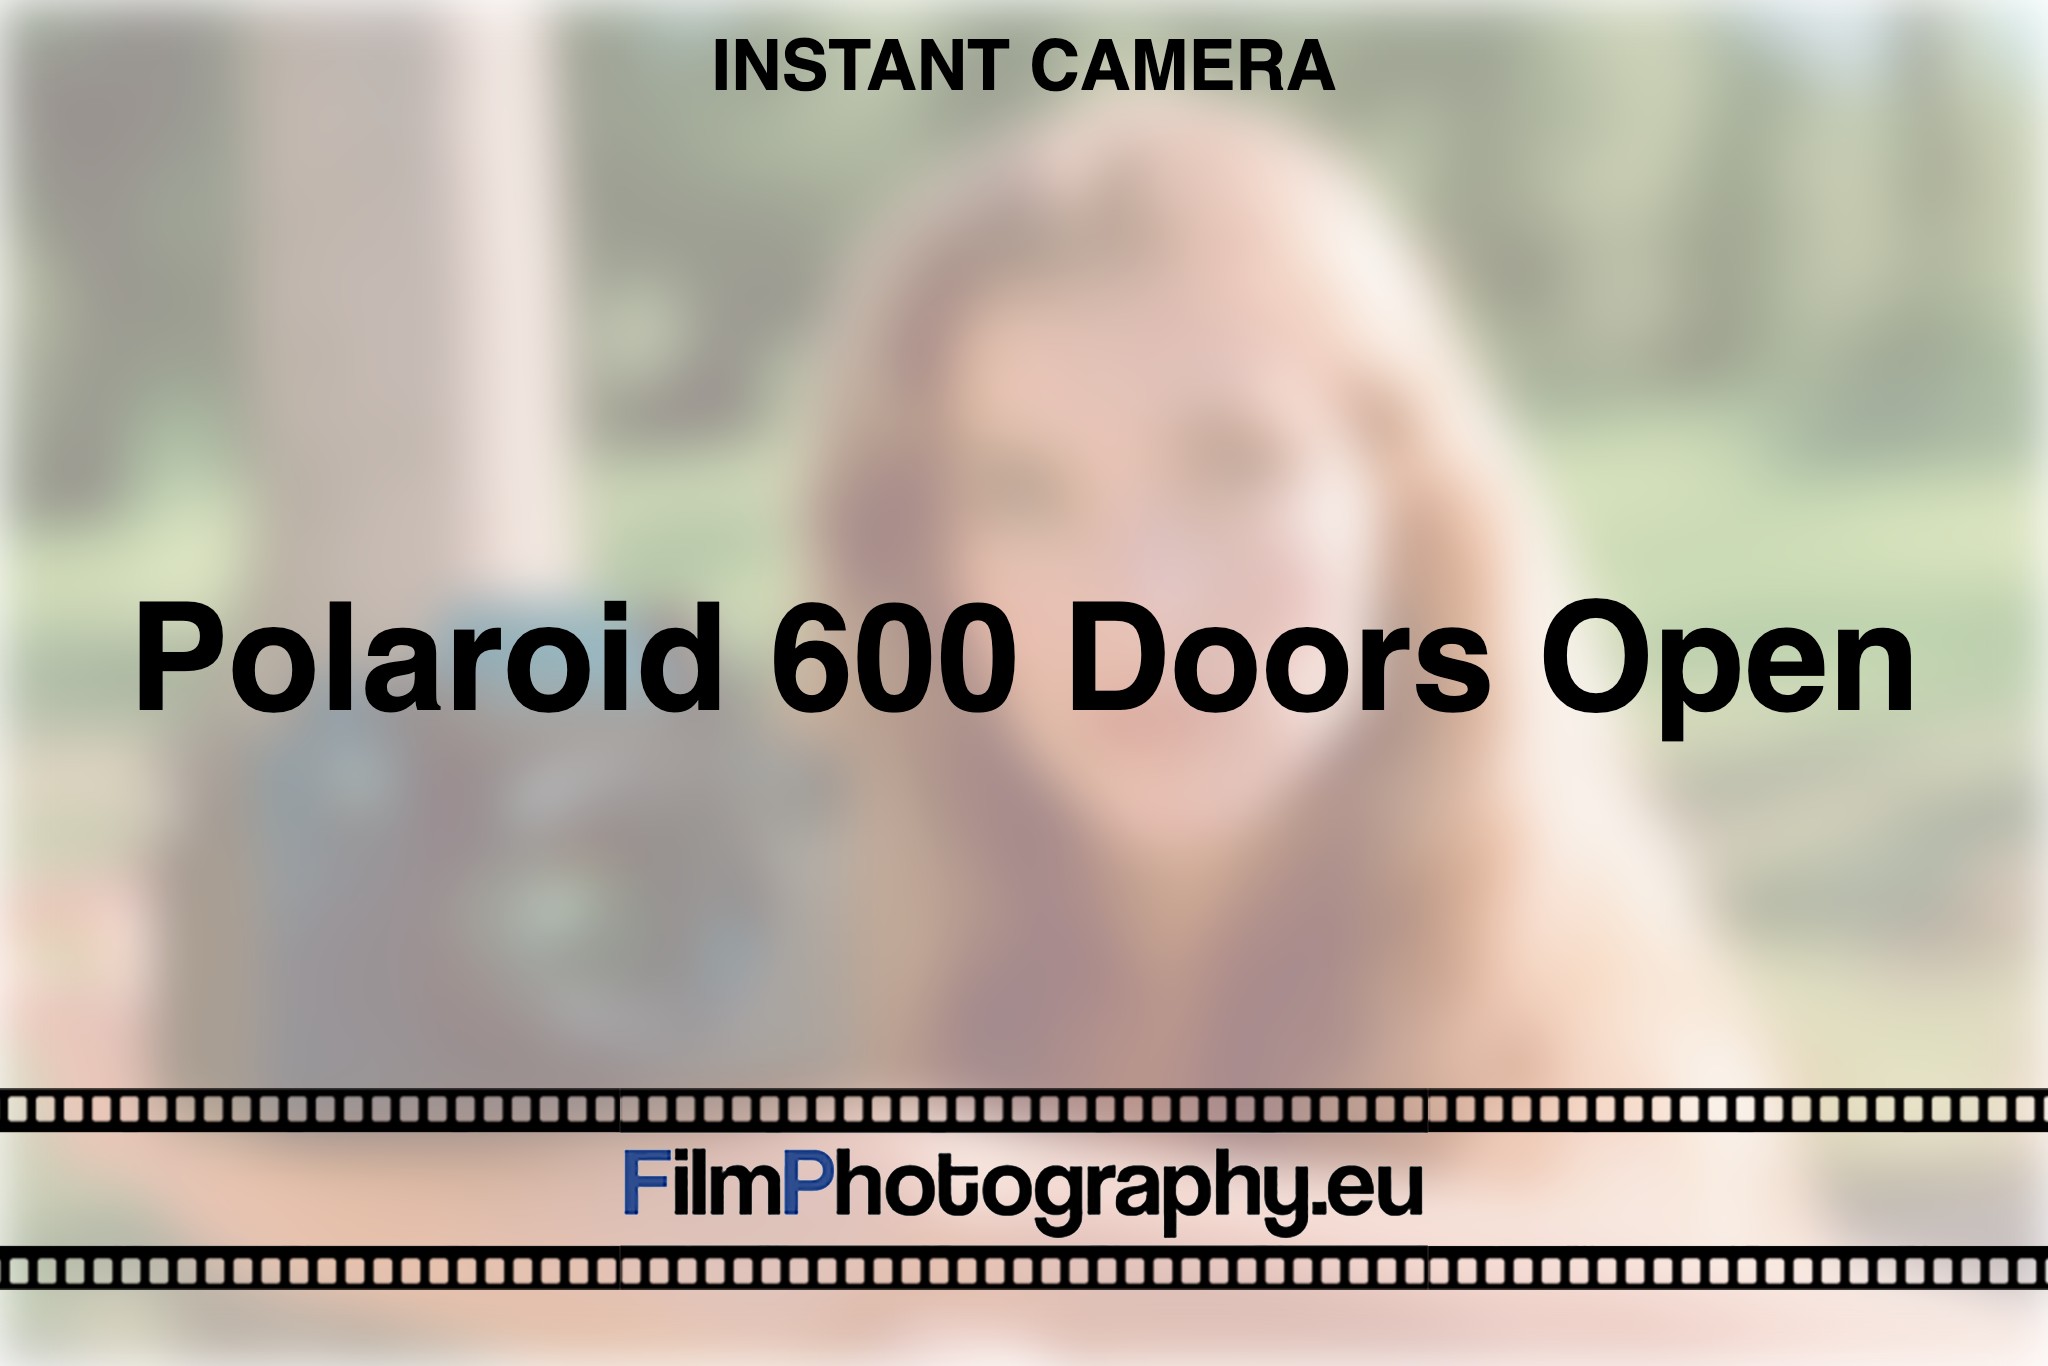 polaroid-600-doors-open-instant-camera-bnv